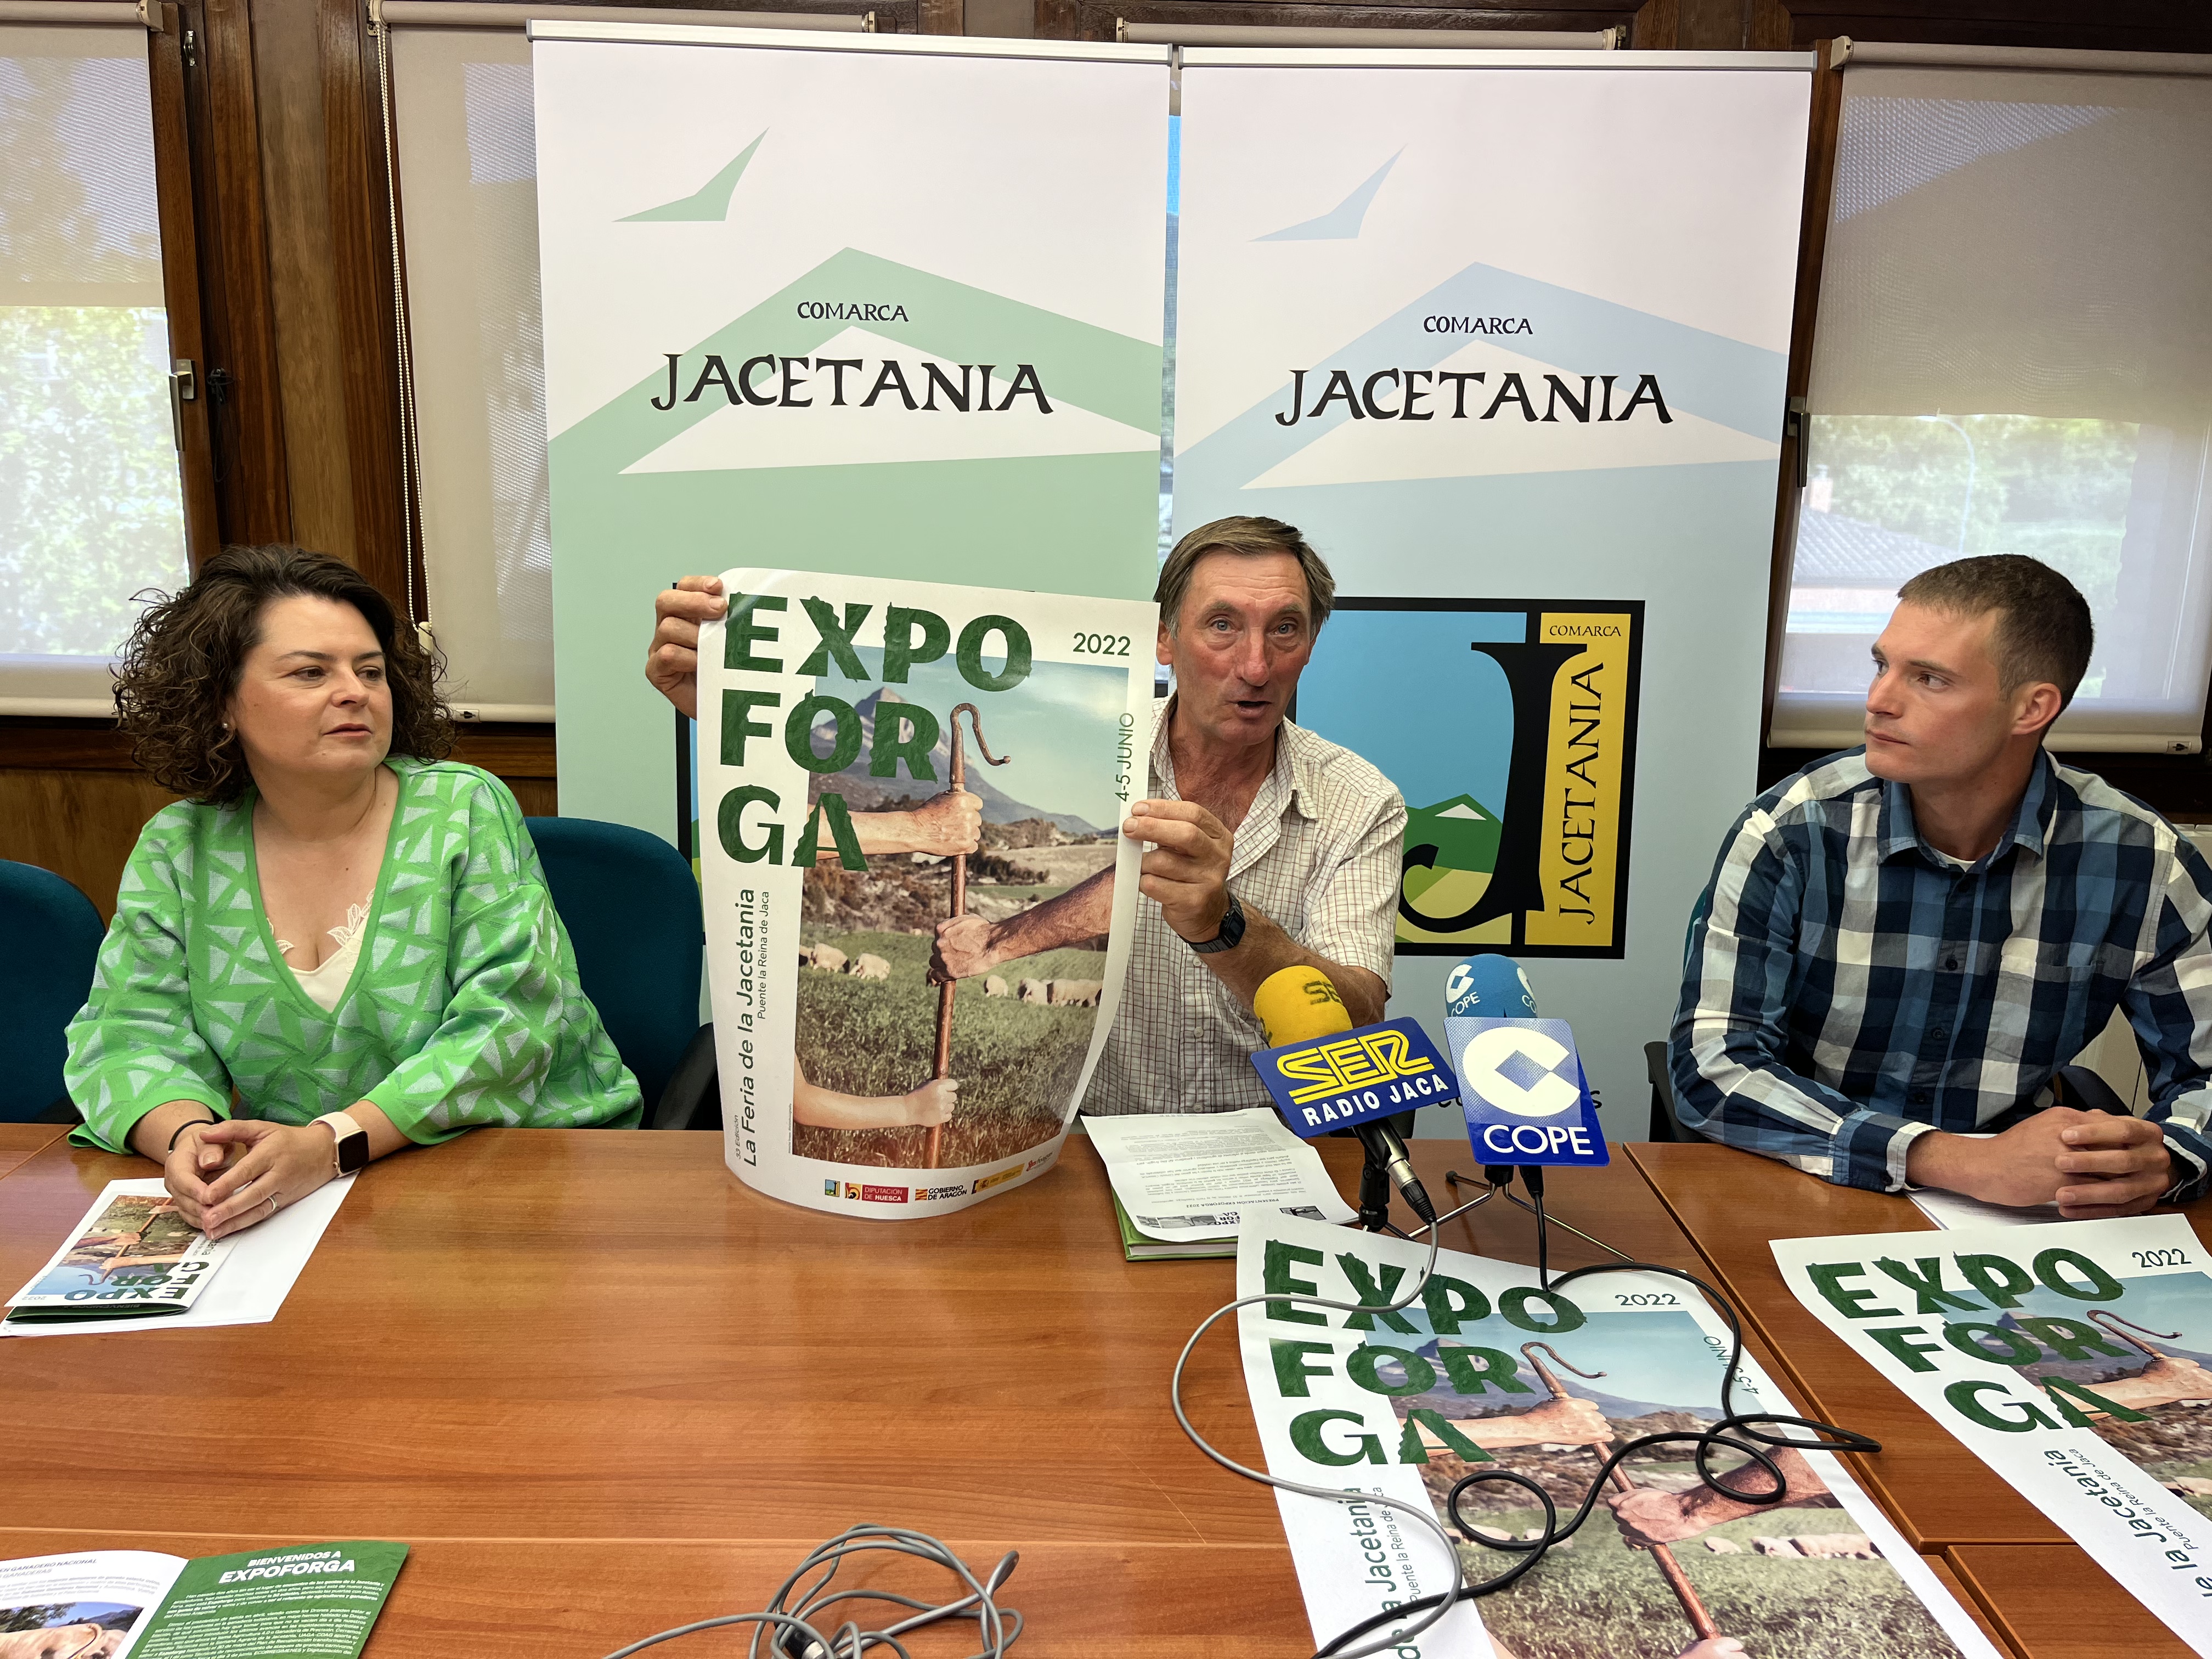 La Comarca de La Jacetania celebra la 33ª Feria Expoforga